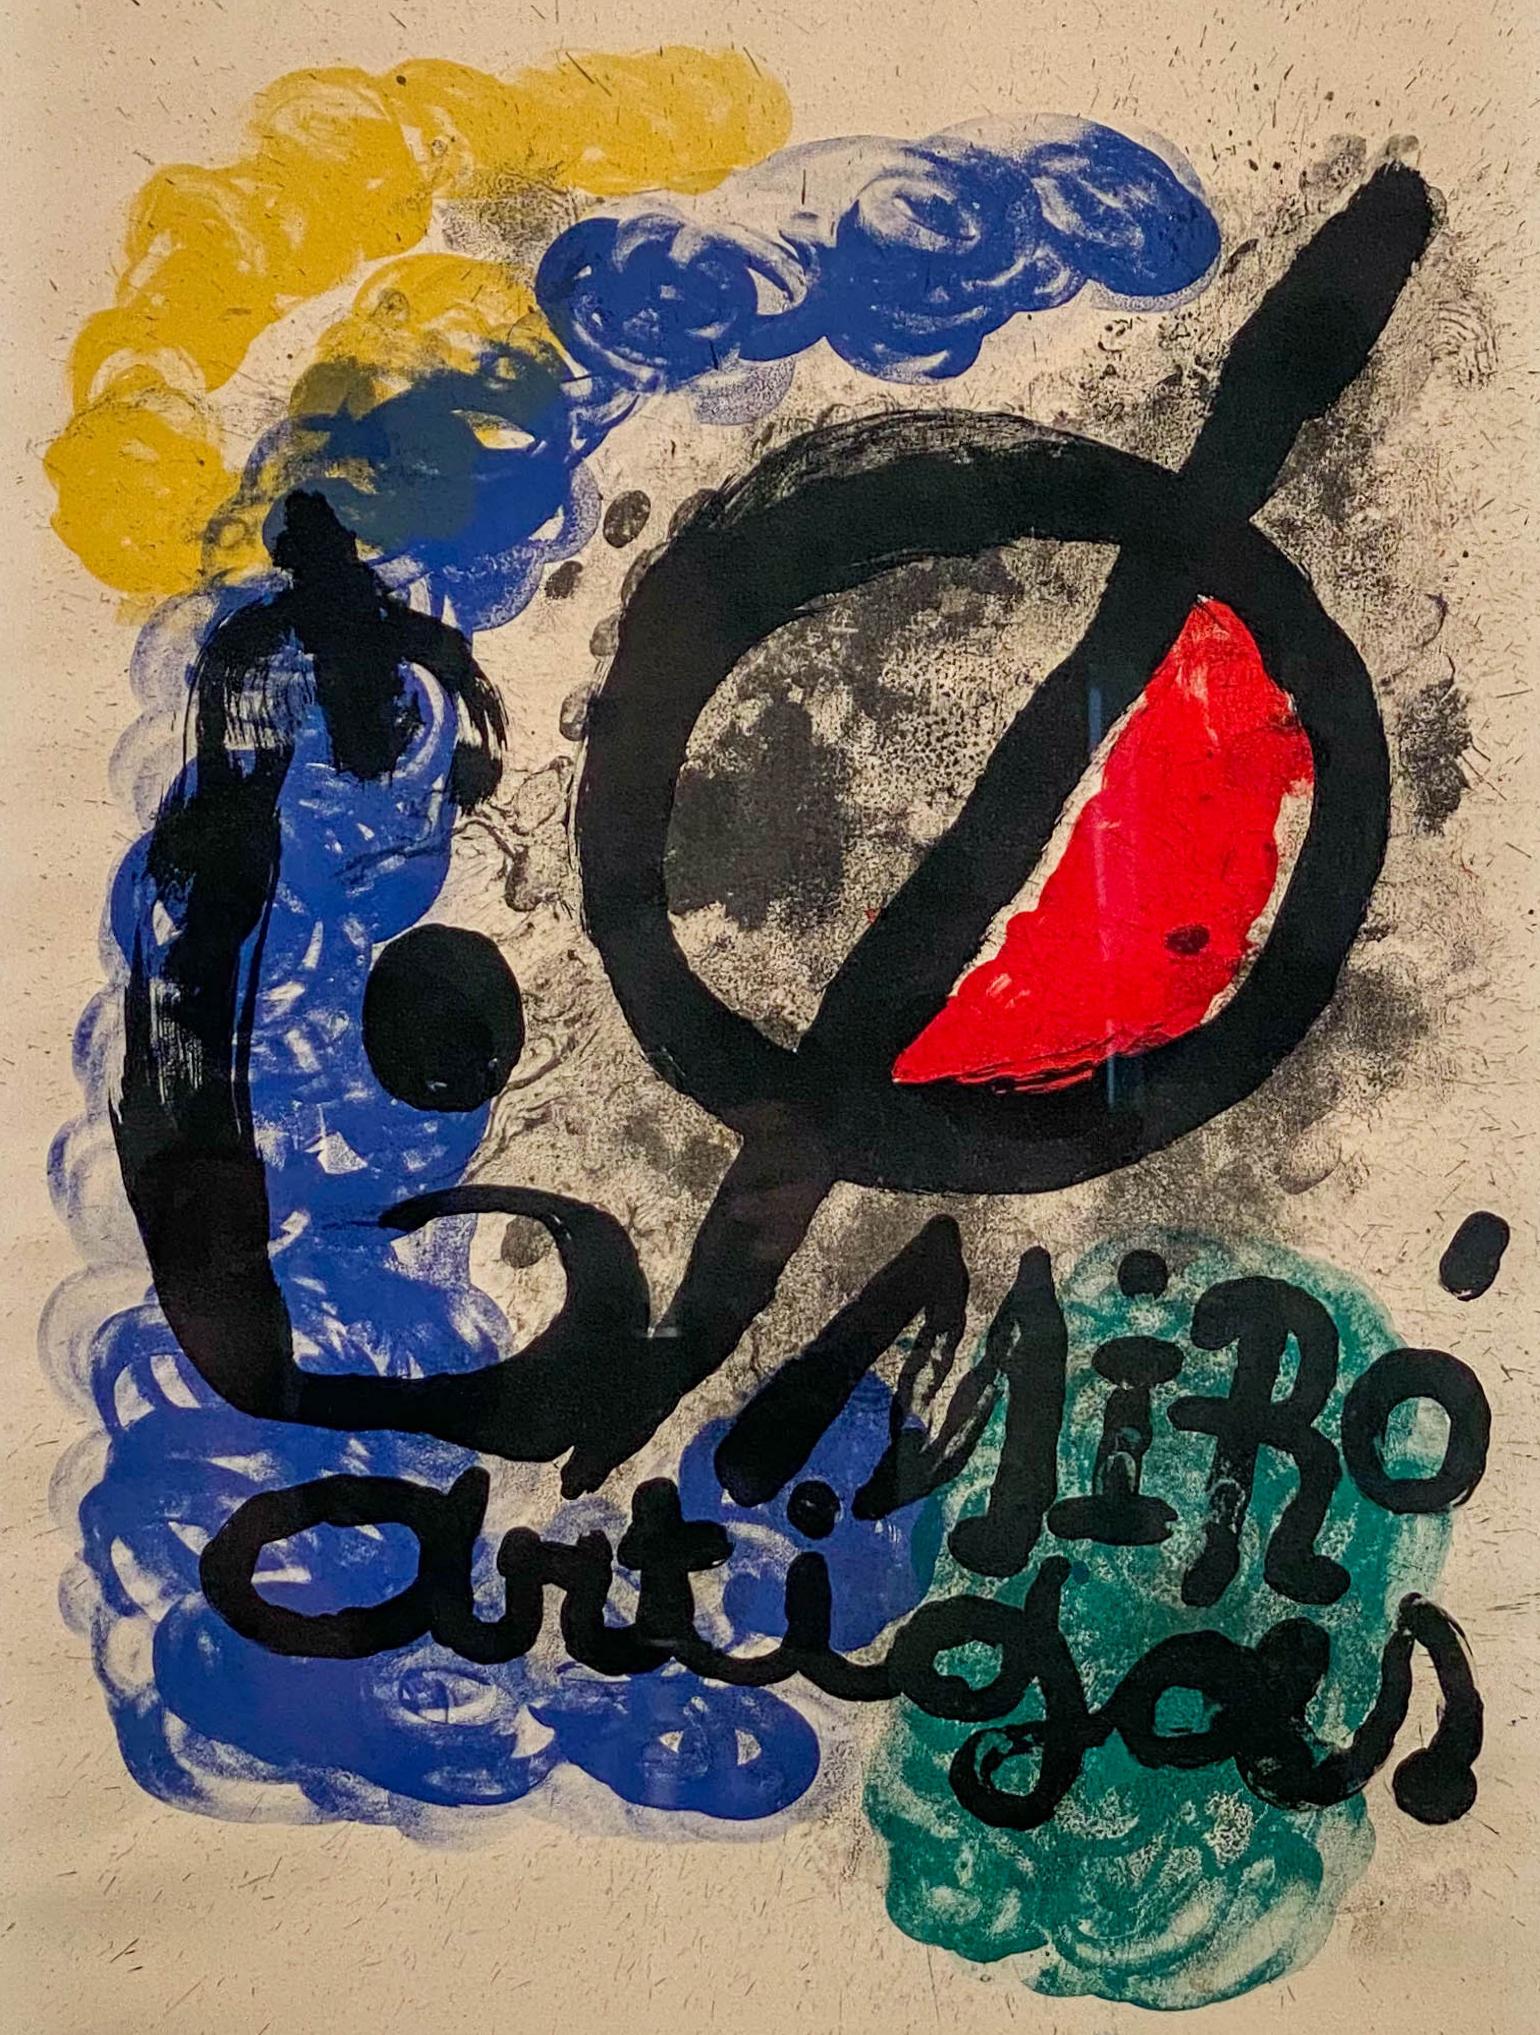 Joan Miro
Espagnol, 1893-1983
Affiche pour l'Exposition Miro-Artigas, 1963

Lithographie sur papier Rives
33